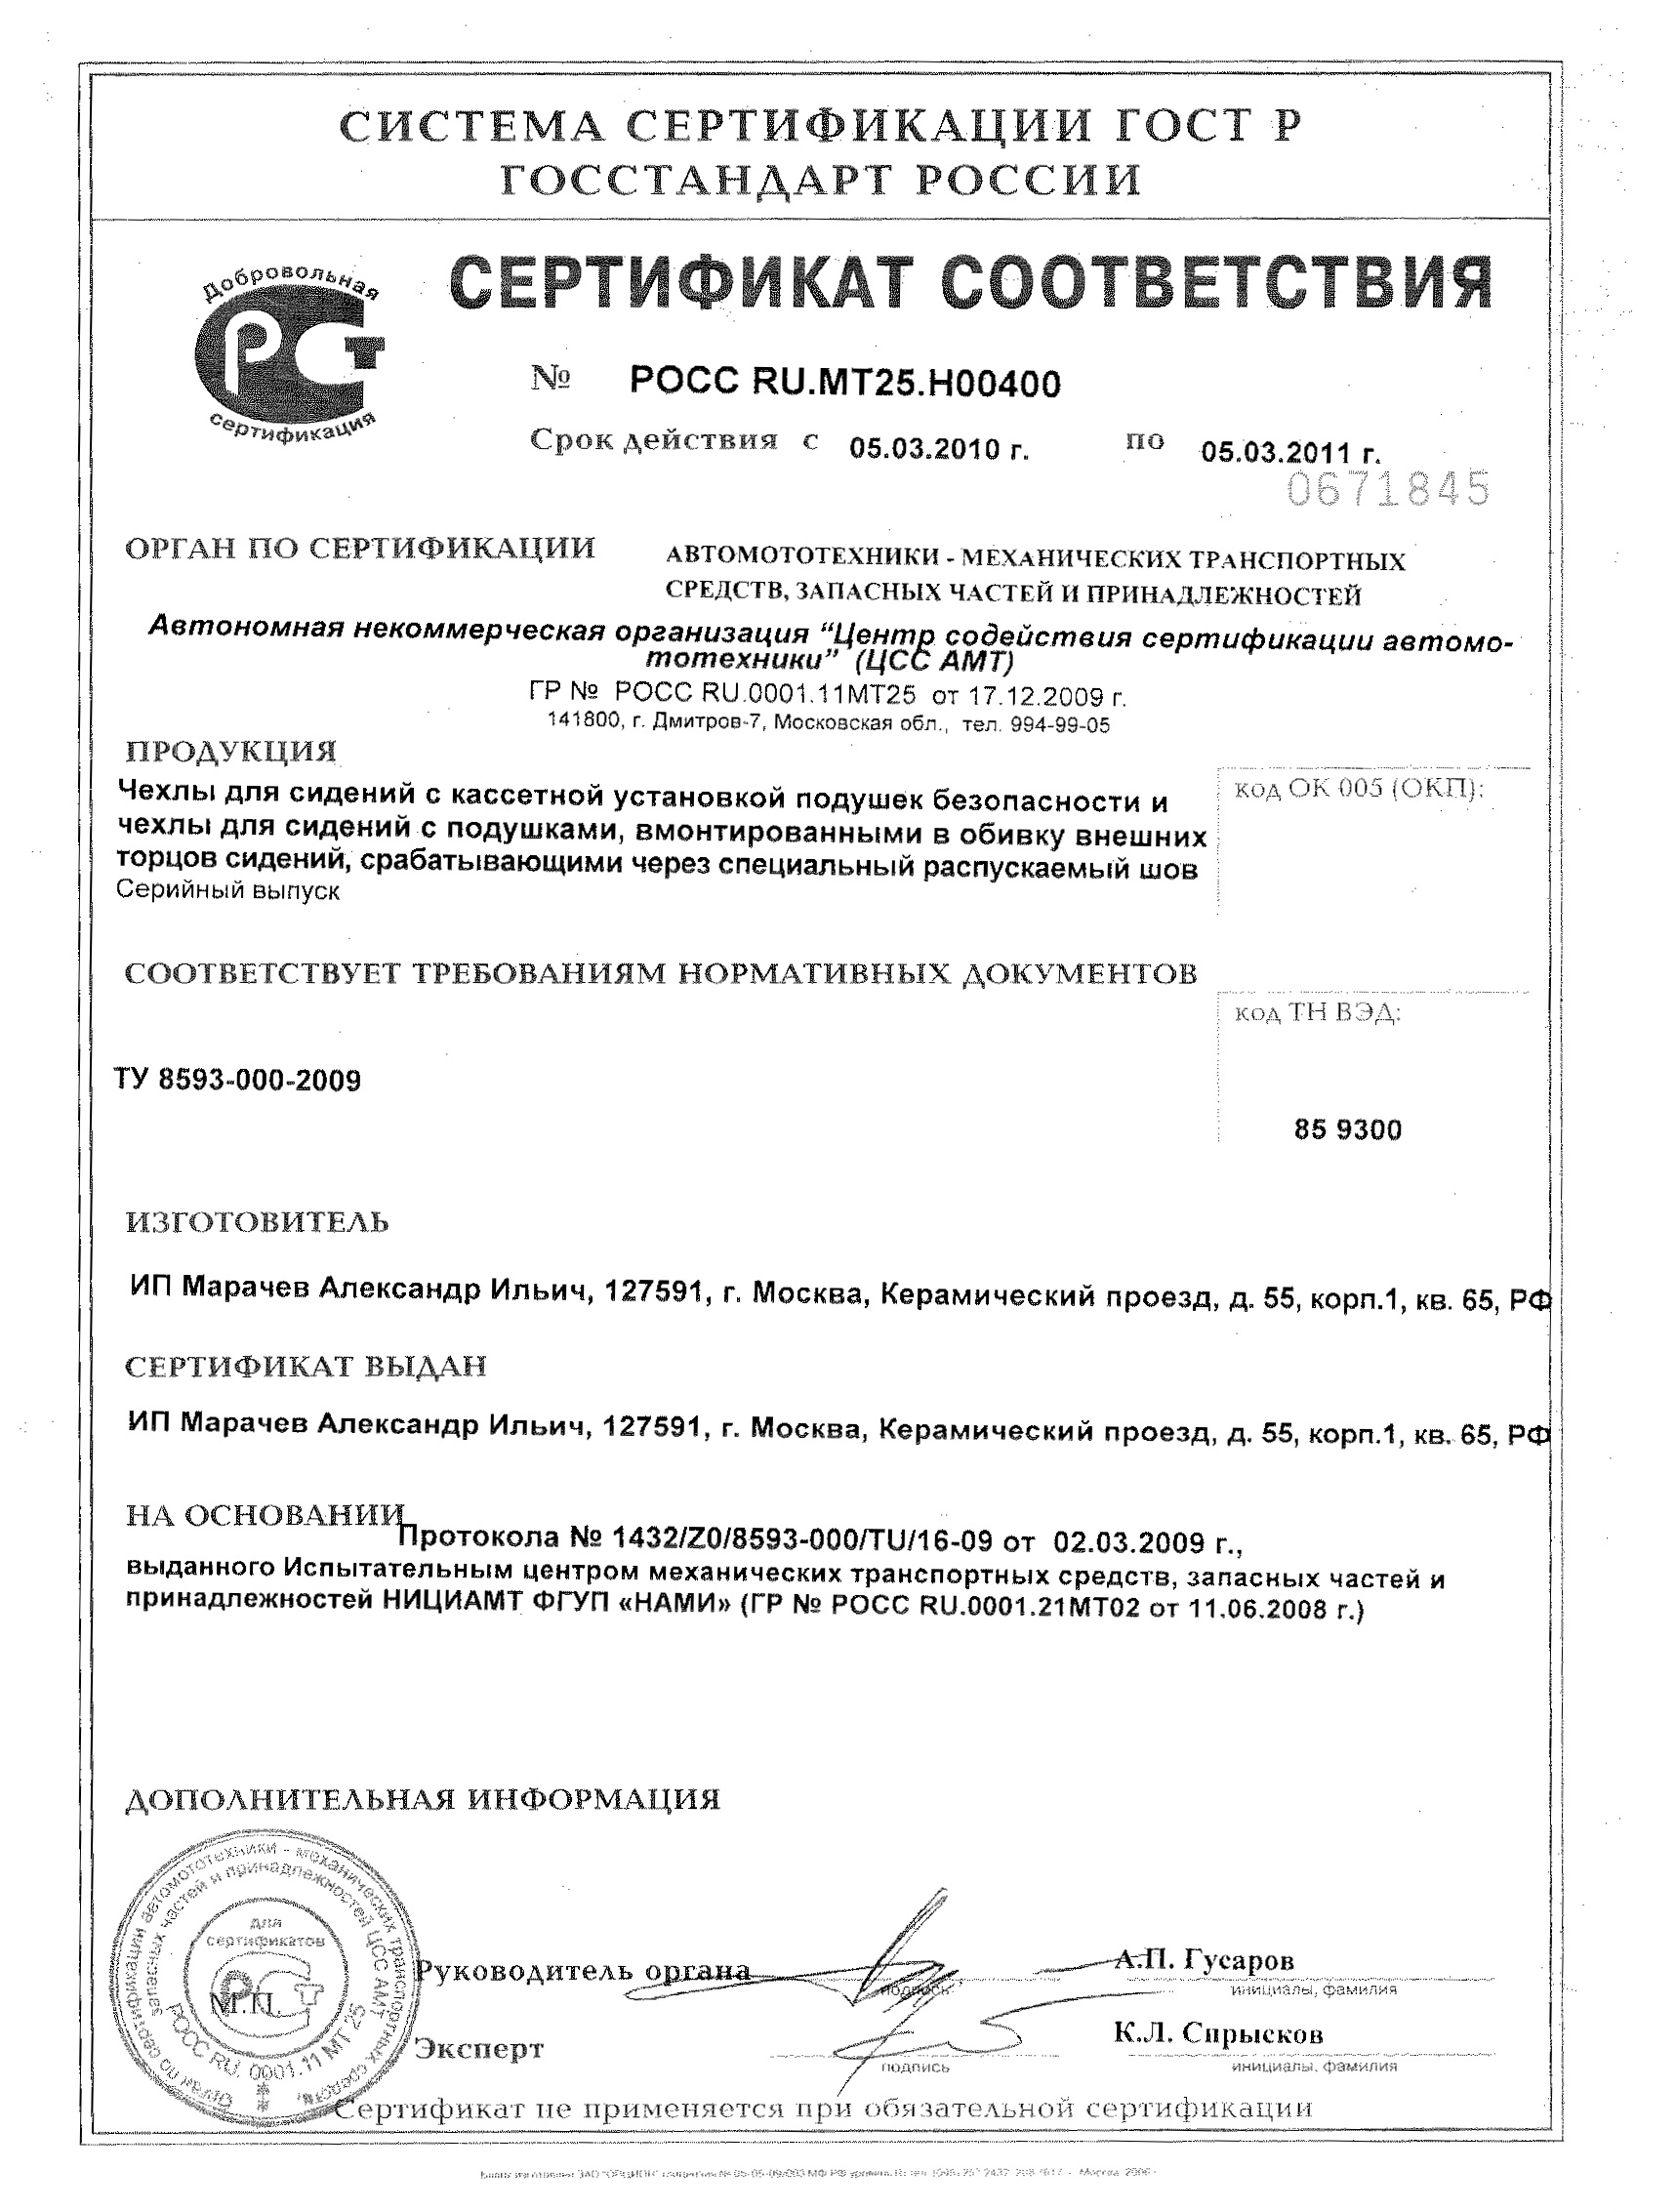 Сертификат соответствия с 2010 по 2011